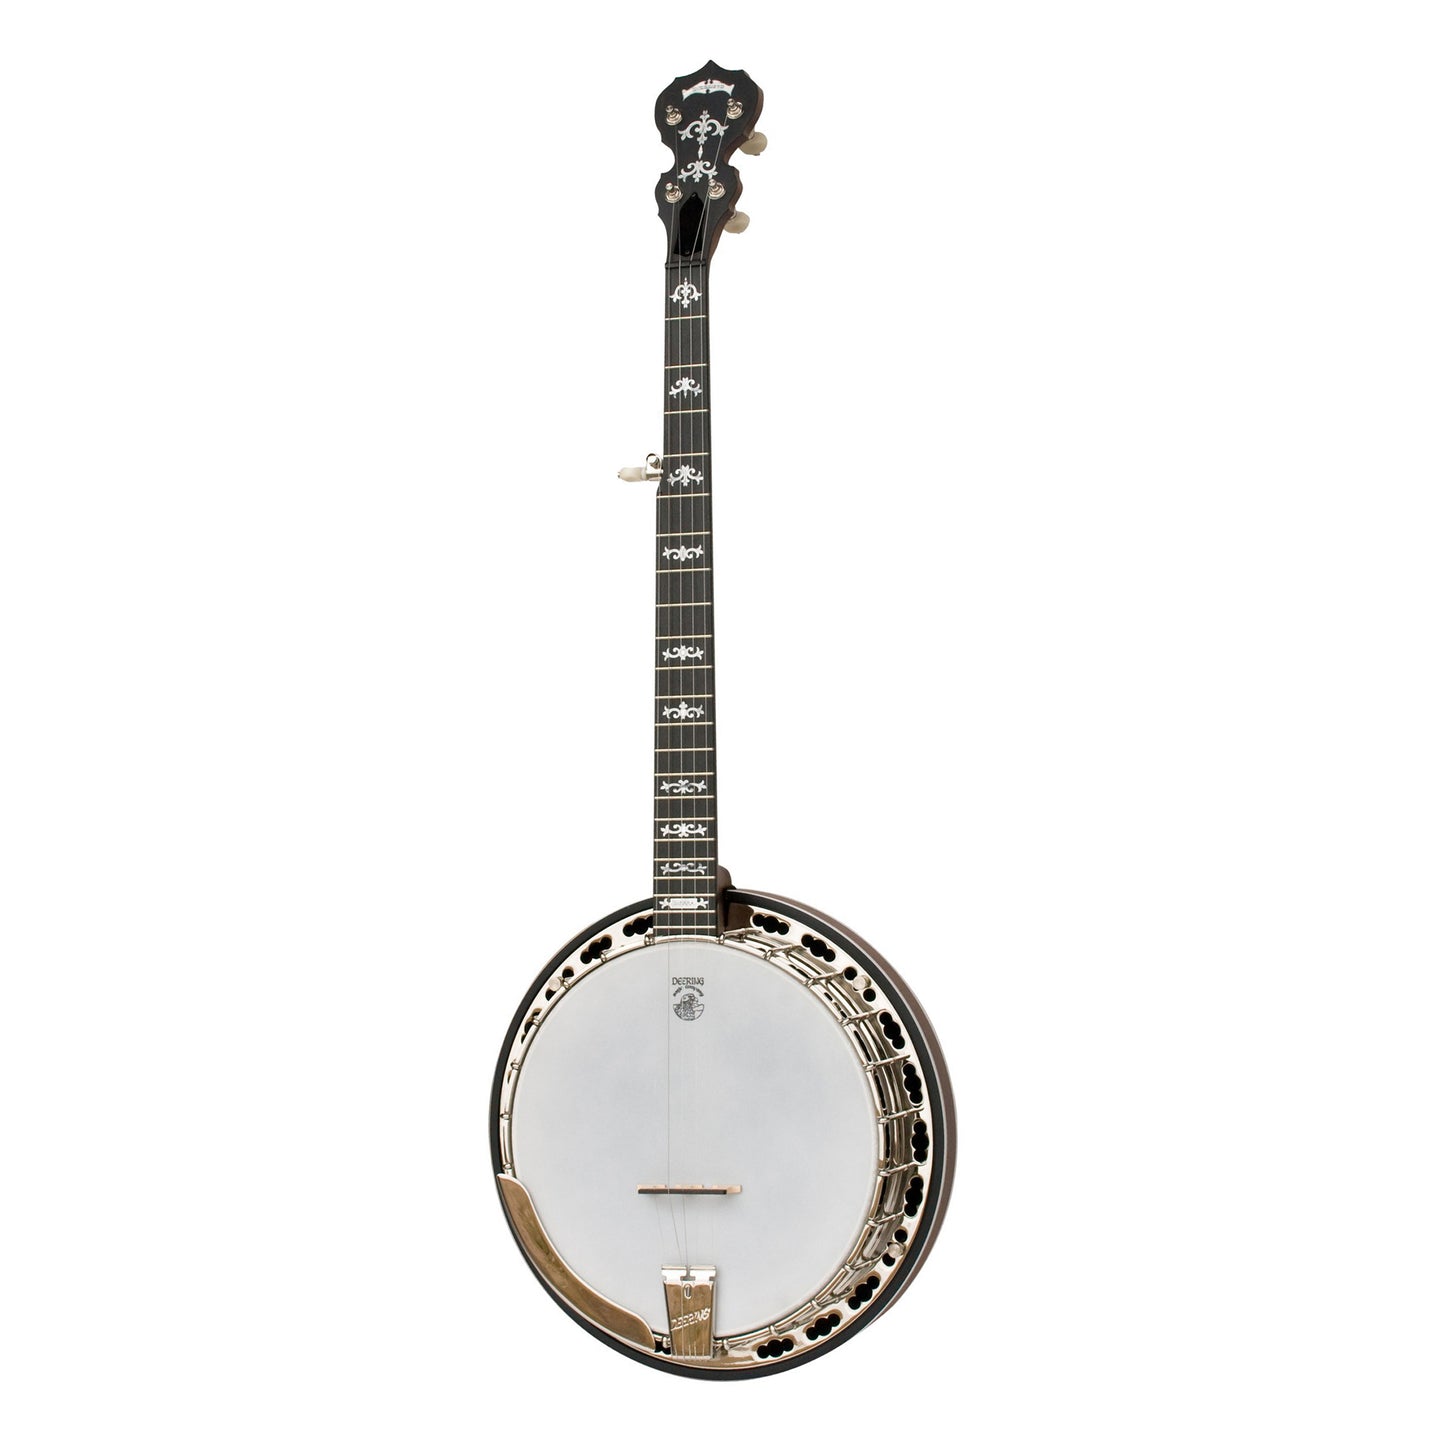 Deering Sierra 5 String Banjo in Maple with Hard Case